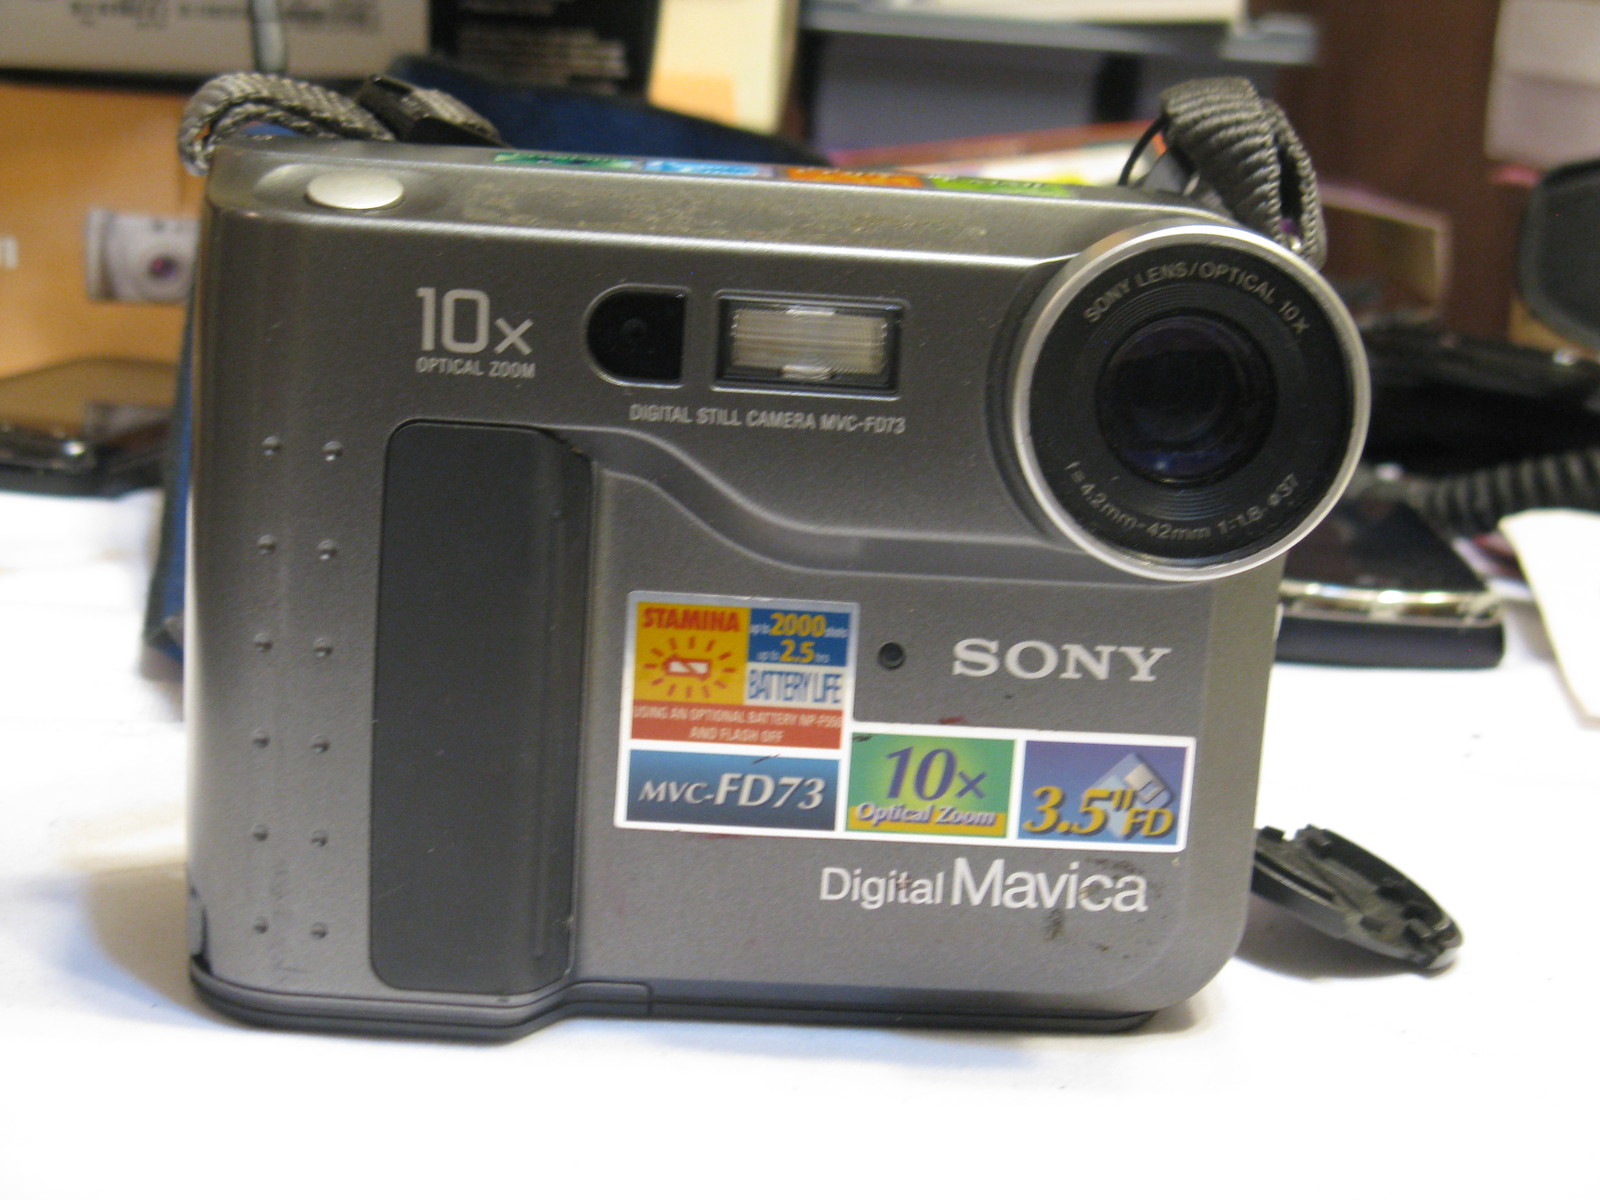 Цифровая камера с дискетой: обозреваем Sony Mavica MVC-FD73 - 2